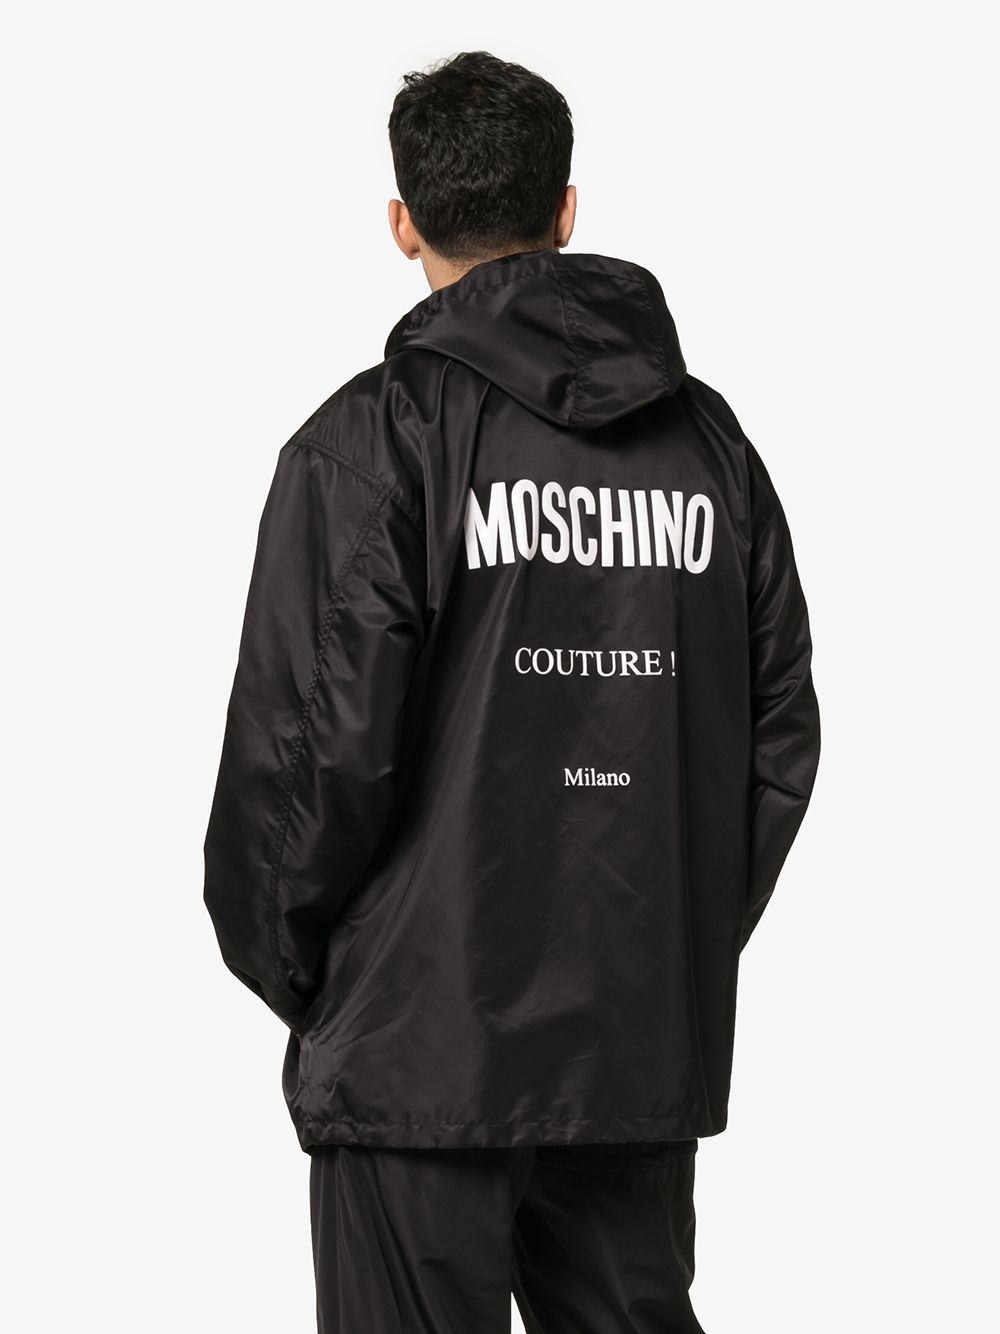 фото Moschino куртка с капюшоном и логотипом